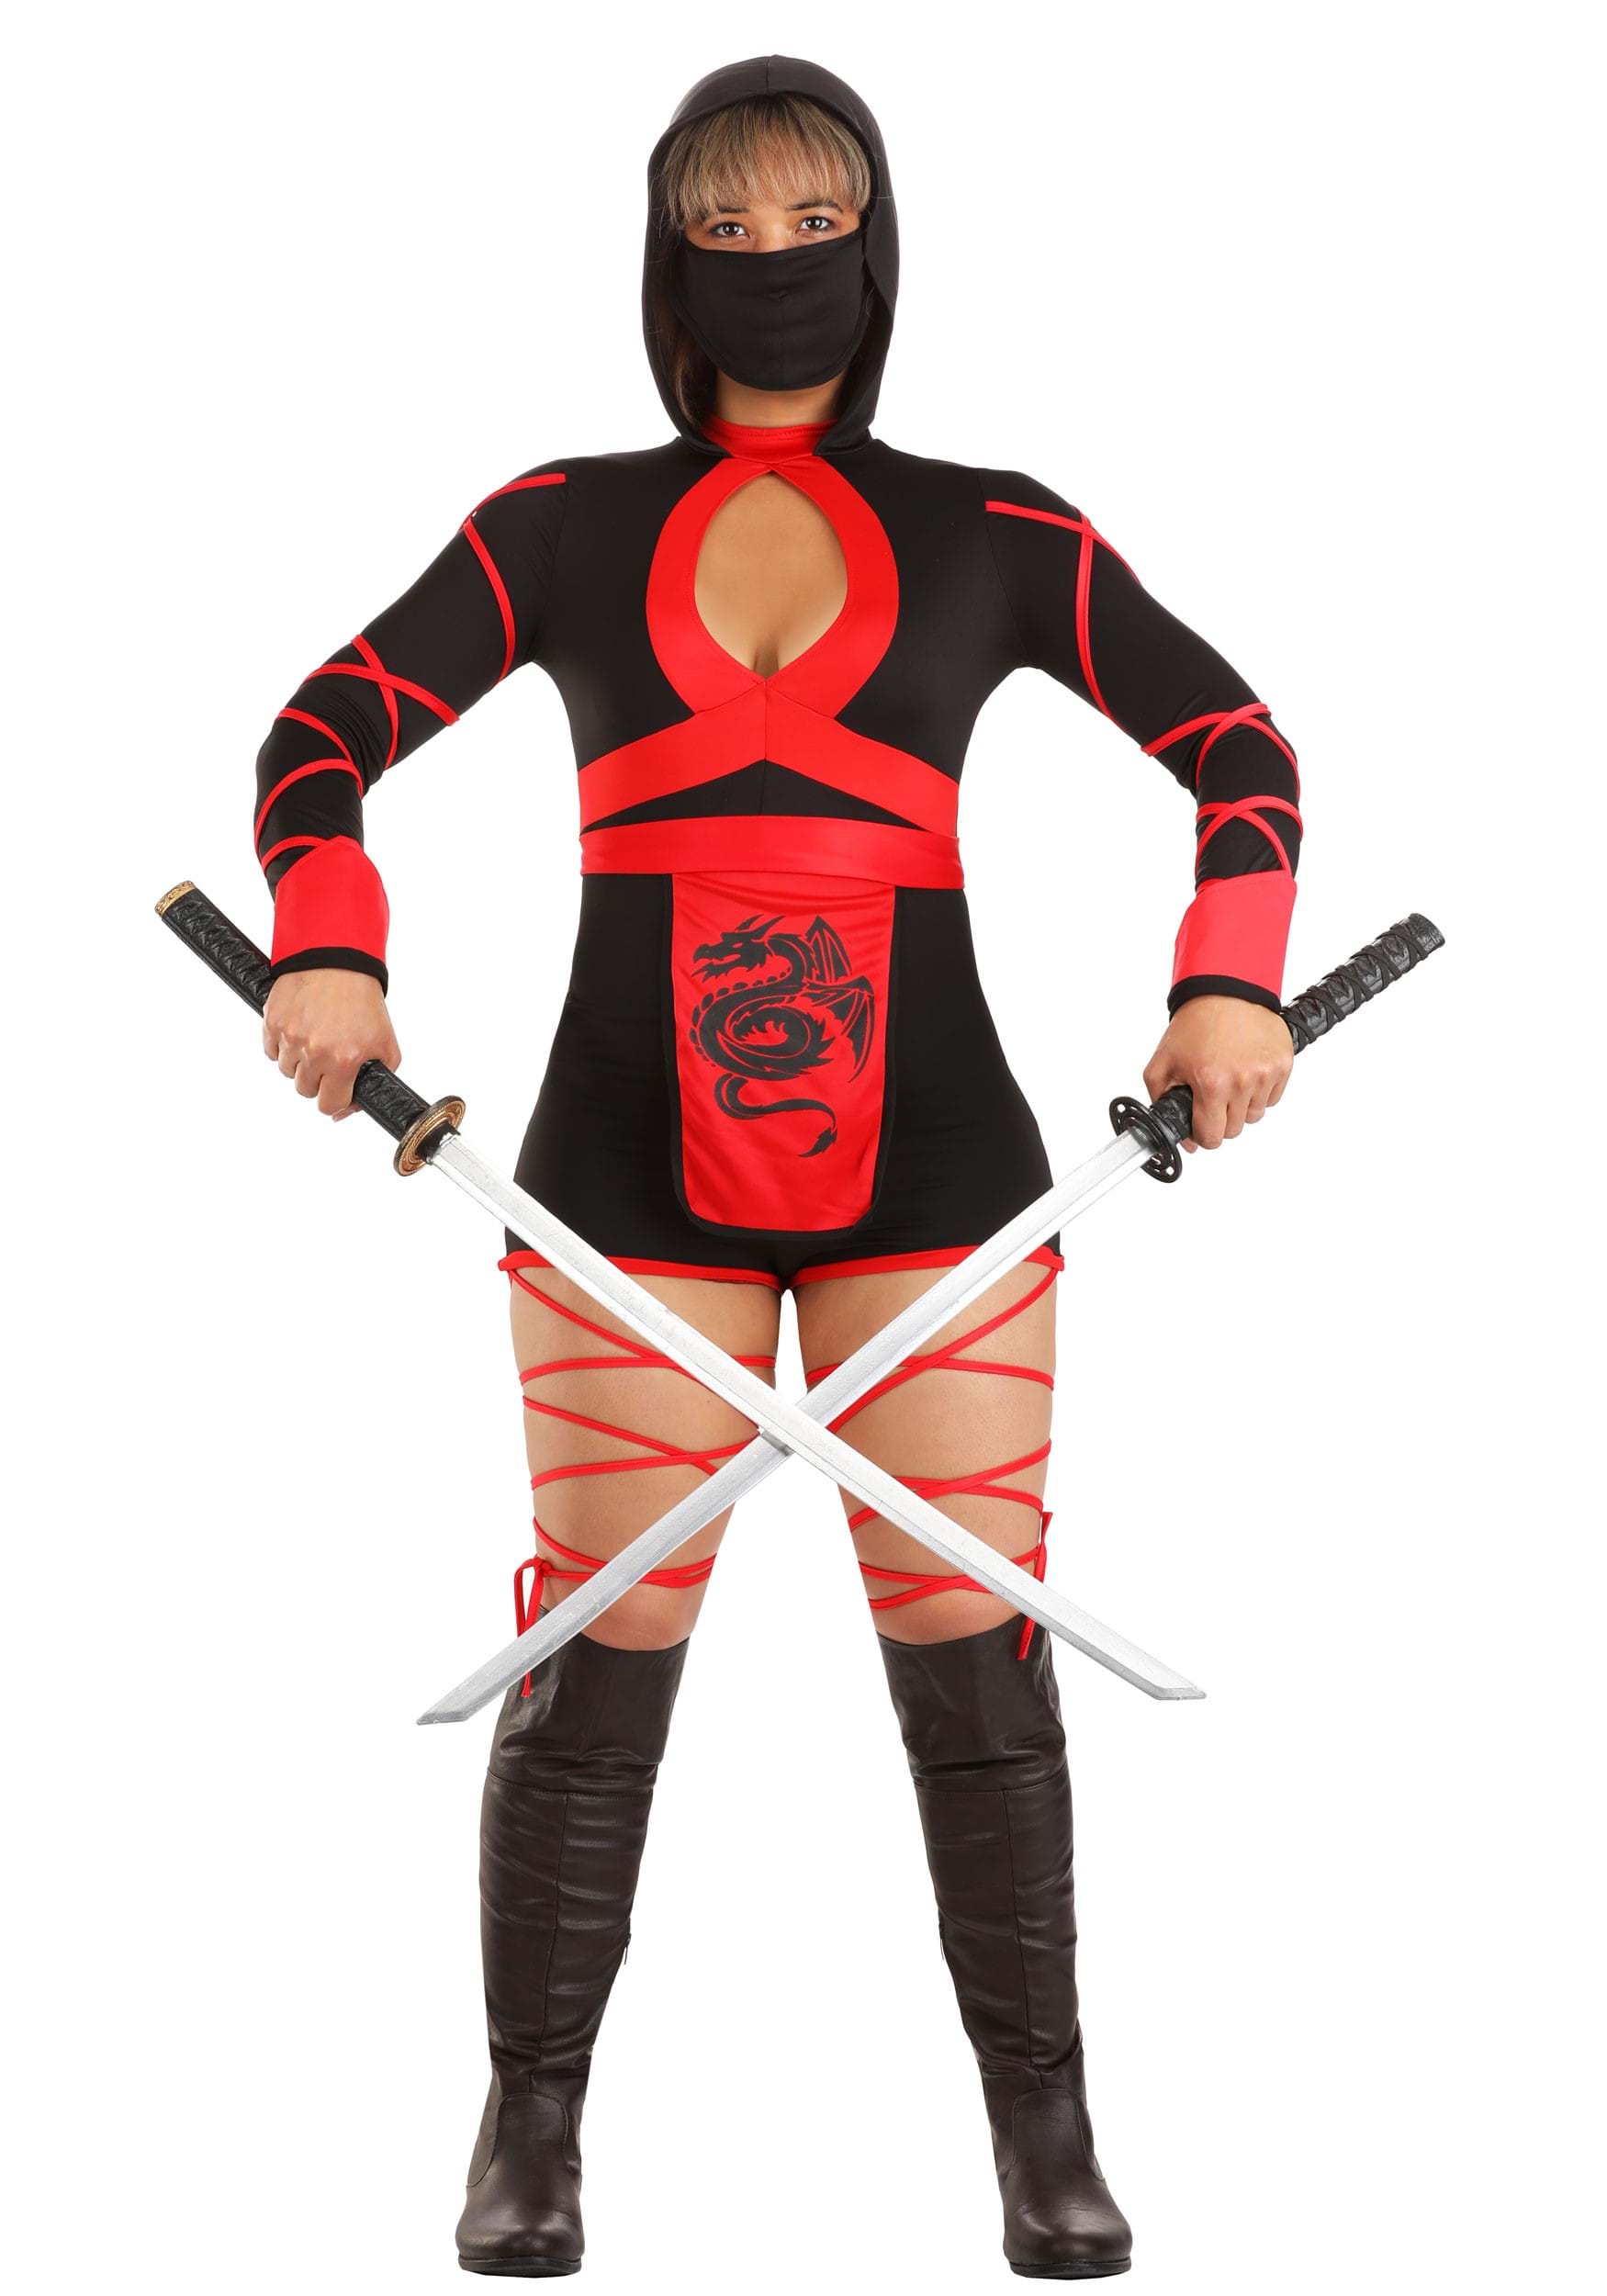 ninja costume teenage girl